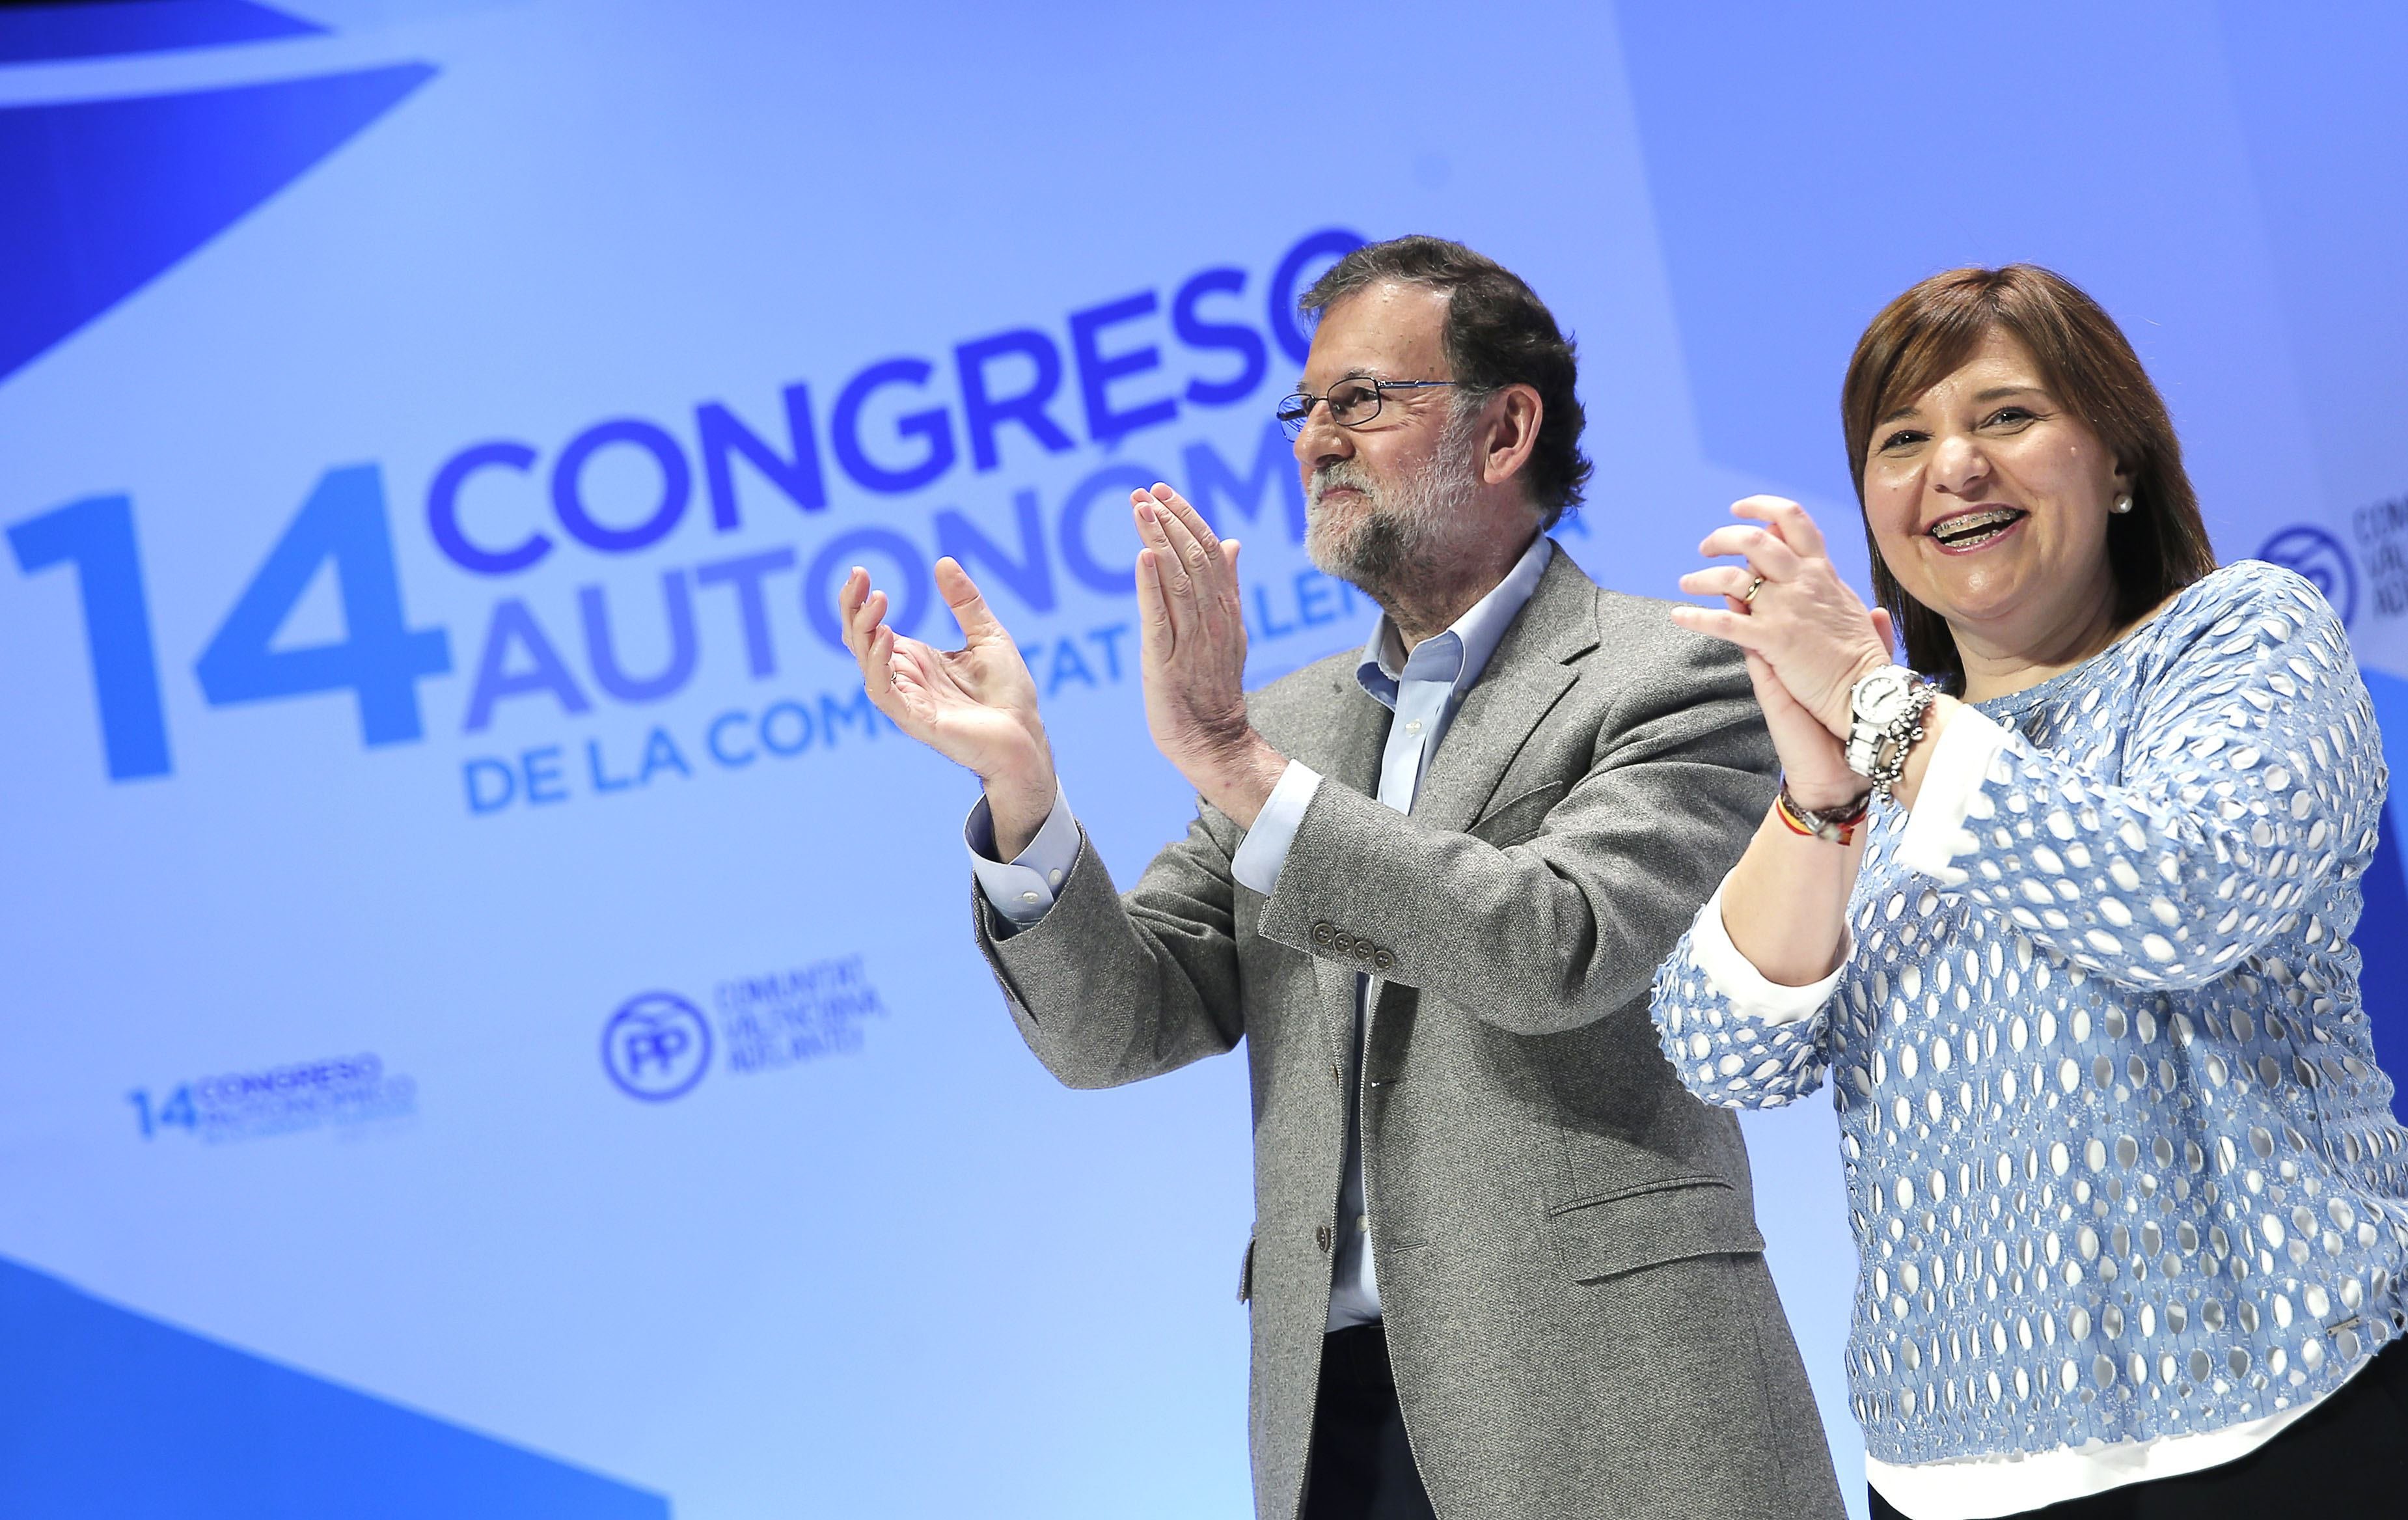 Bonig reclama inversions a Rajoy per evitar el “contagi del separatisme”